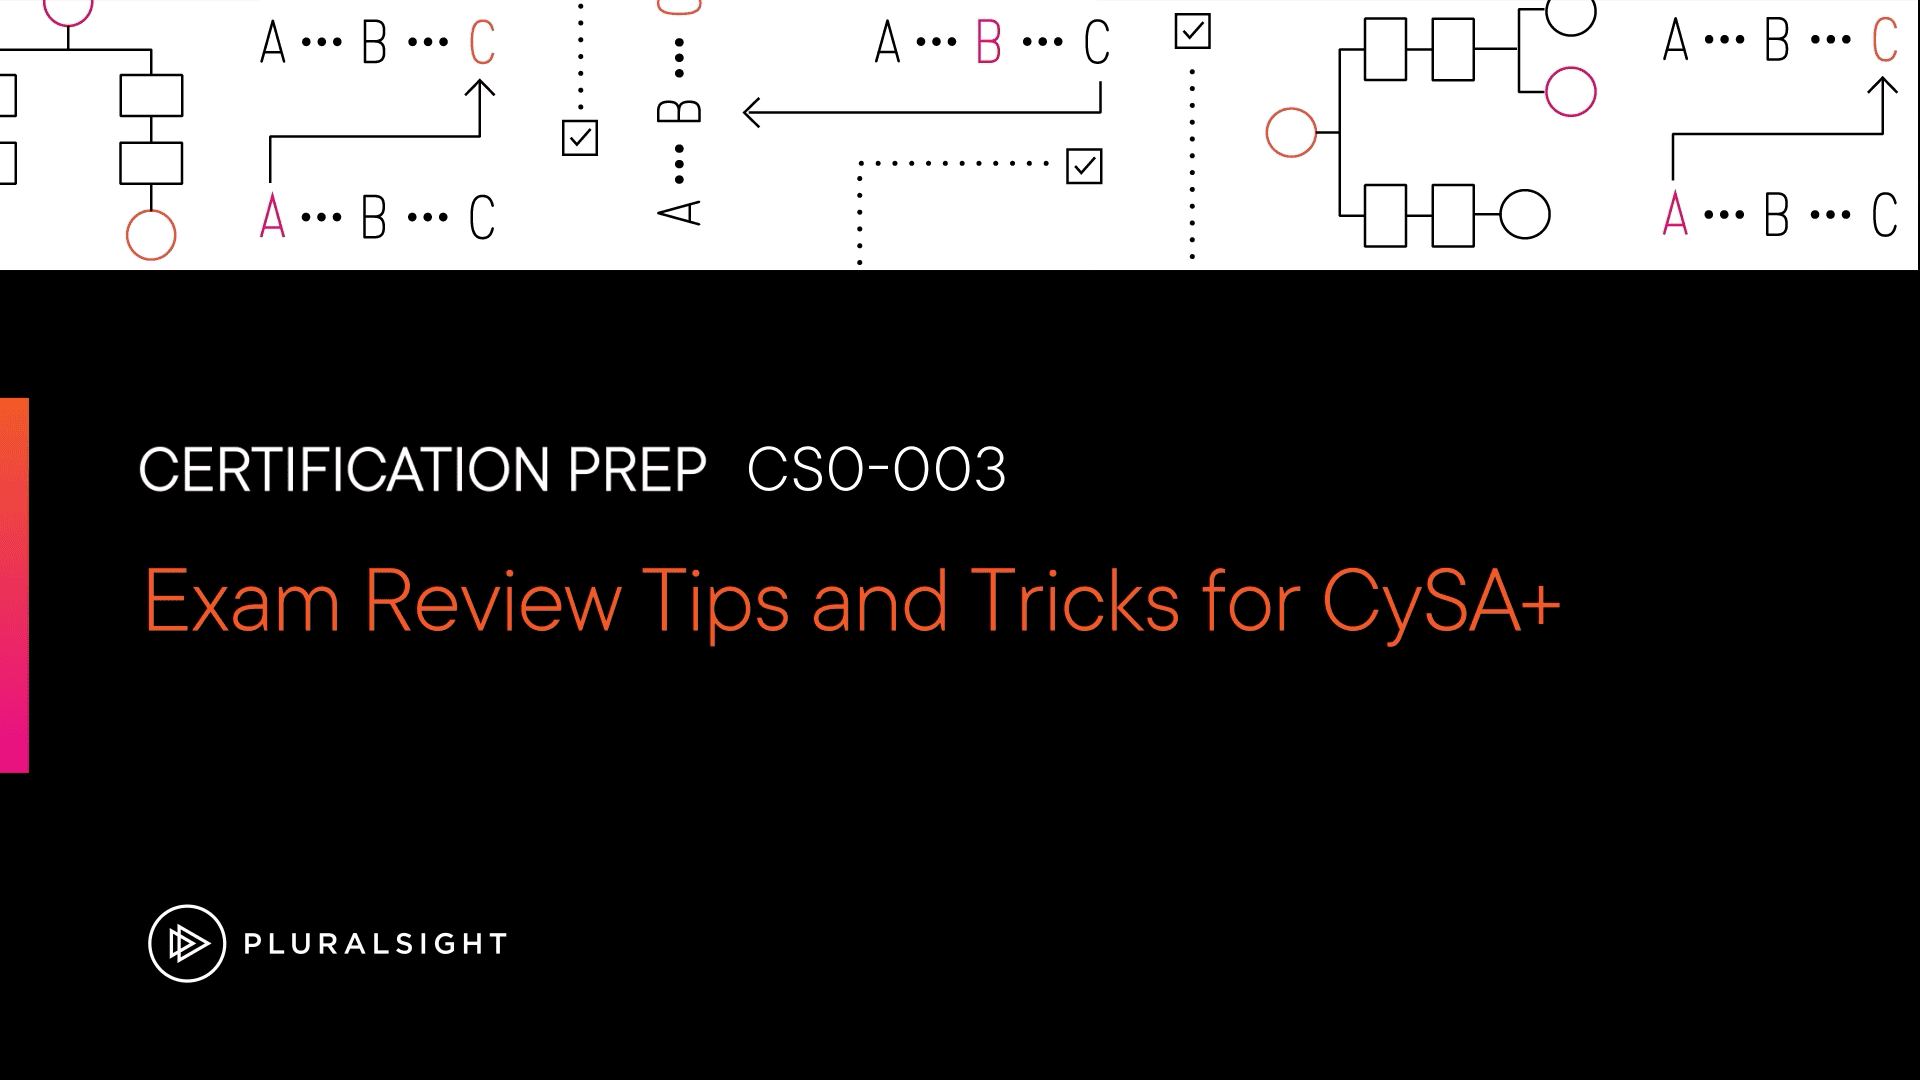 آموزش نکات و ترفندهای مرور امتحان برای CySA+